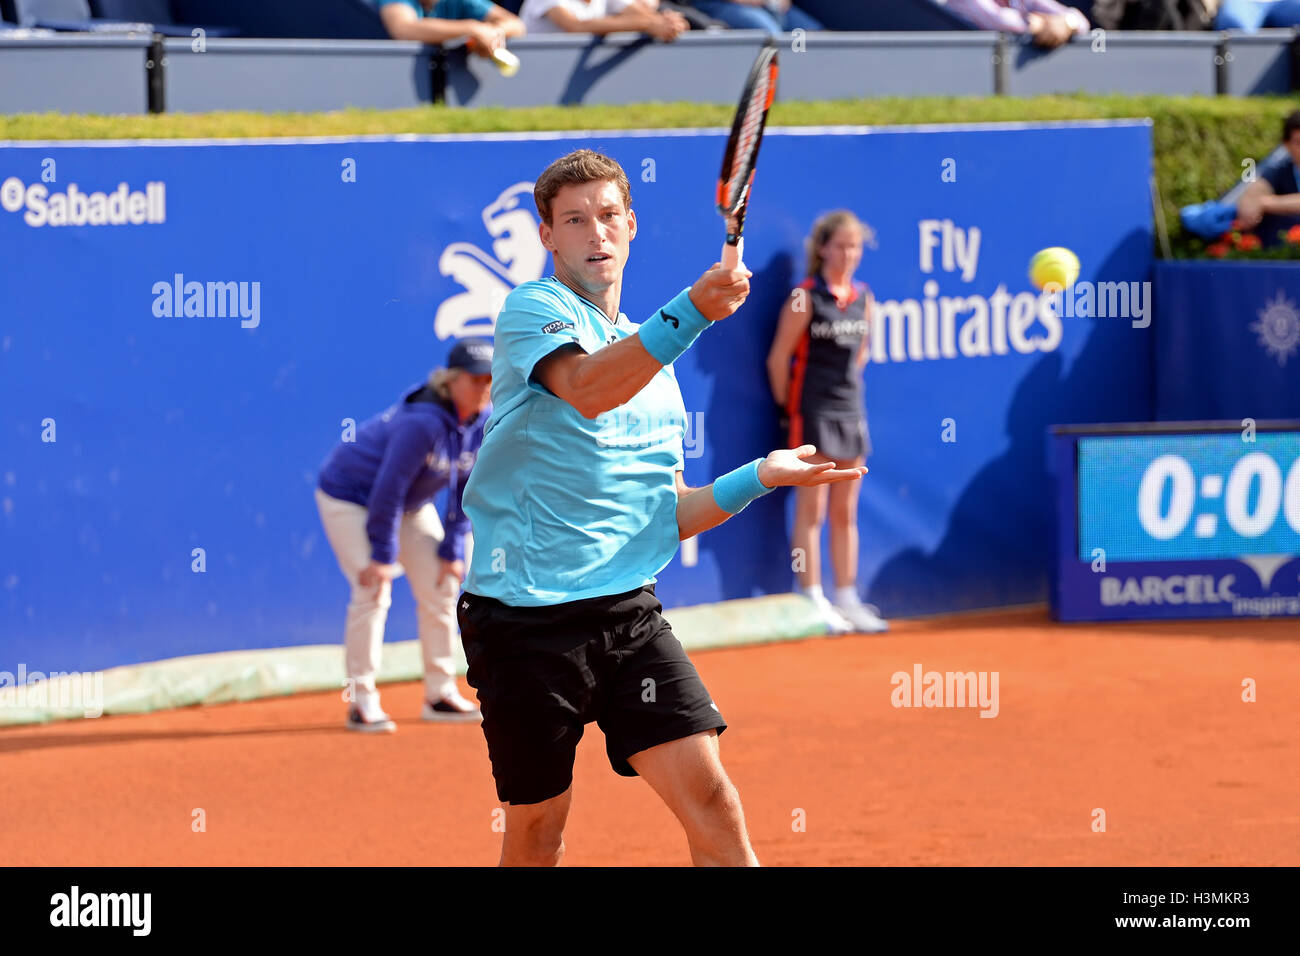 Barcellona - Apr 20: Pablo Carreno Busta (spagnolo giocatore di tennis) svolge in ATP Open di Barcellona. Foto Stock